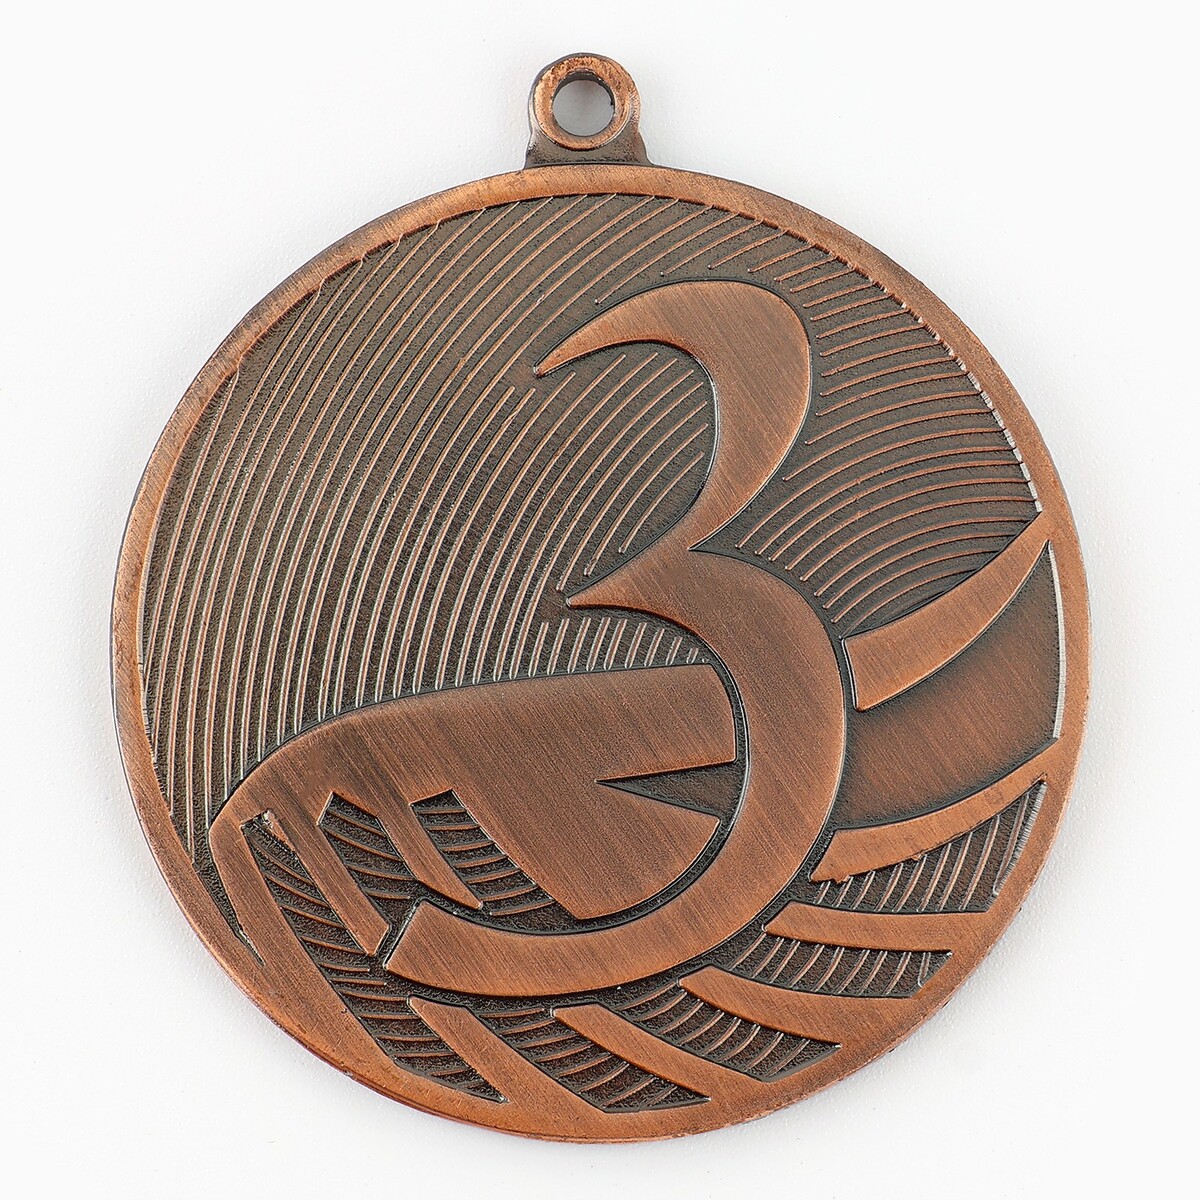 Медаль призовая 001 диам 5см. 3 место. цвет бронз. без ленты